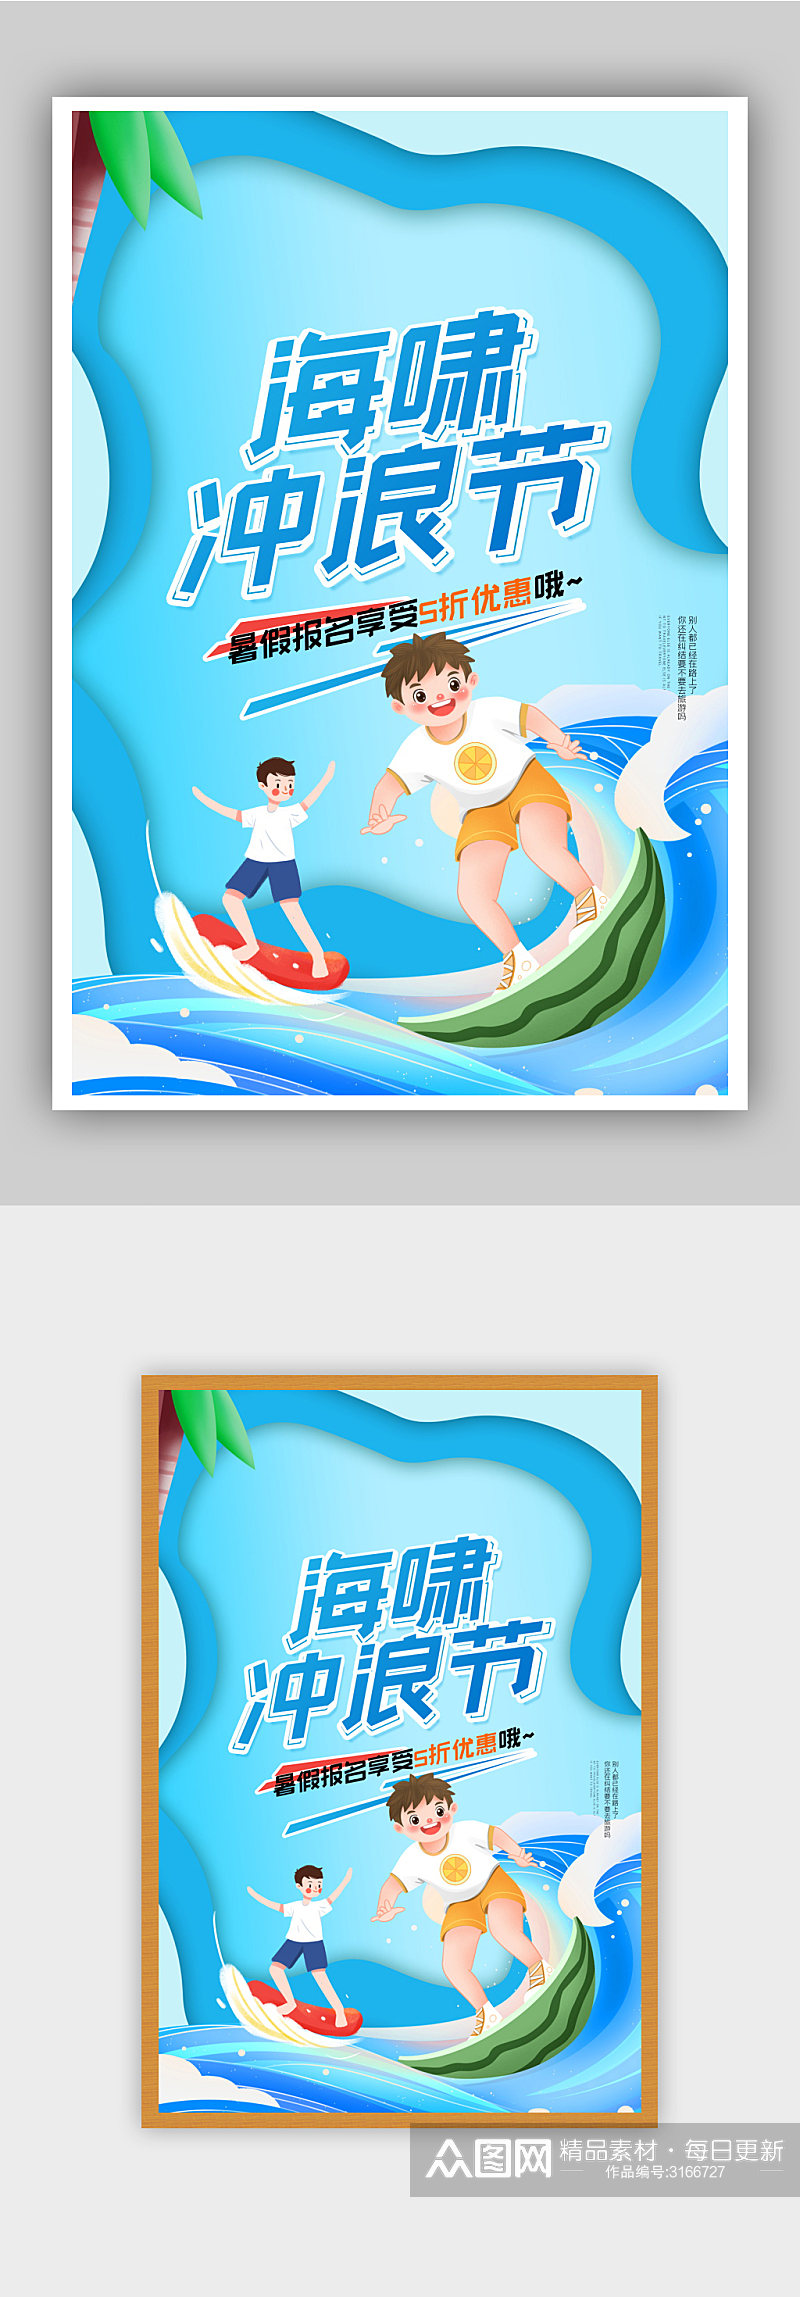 休闲娱乐冲浪节促销宣传海报素材